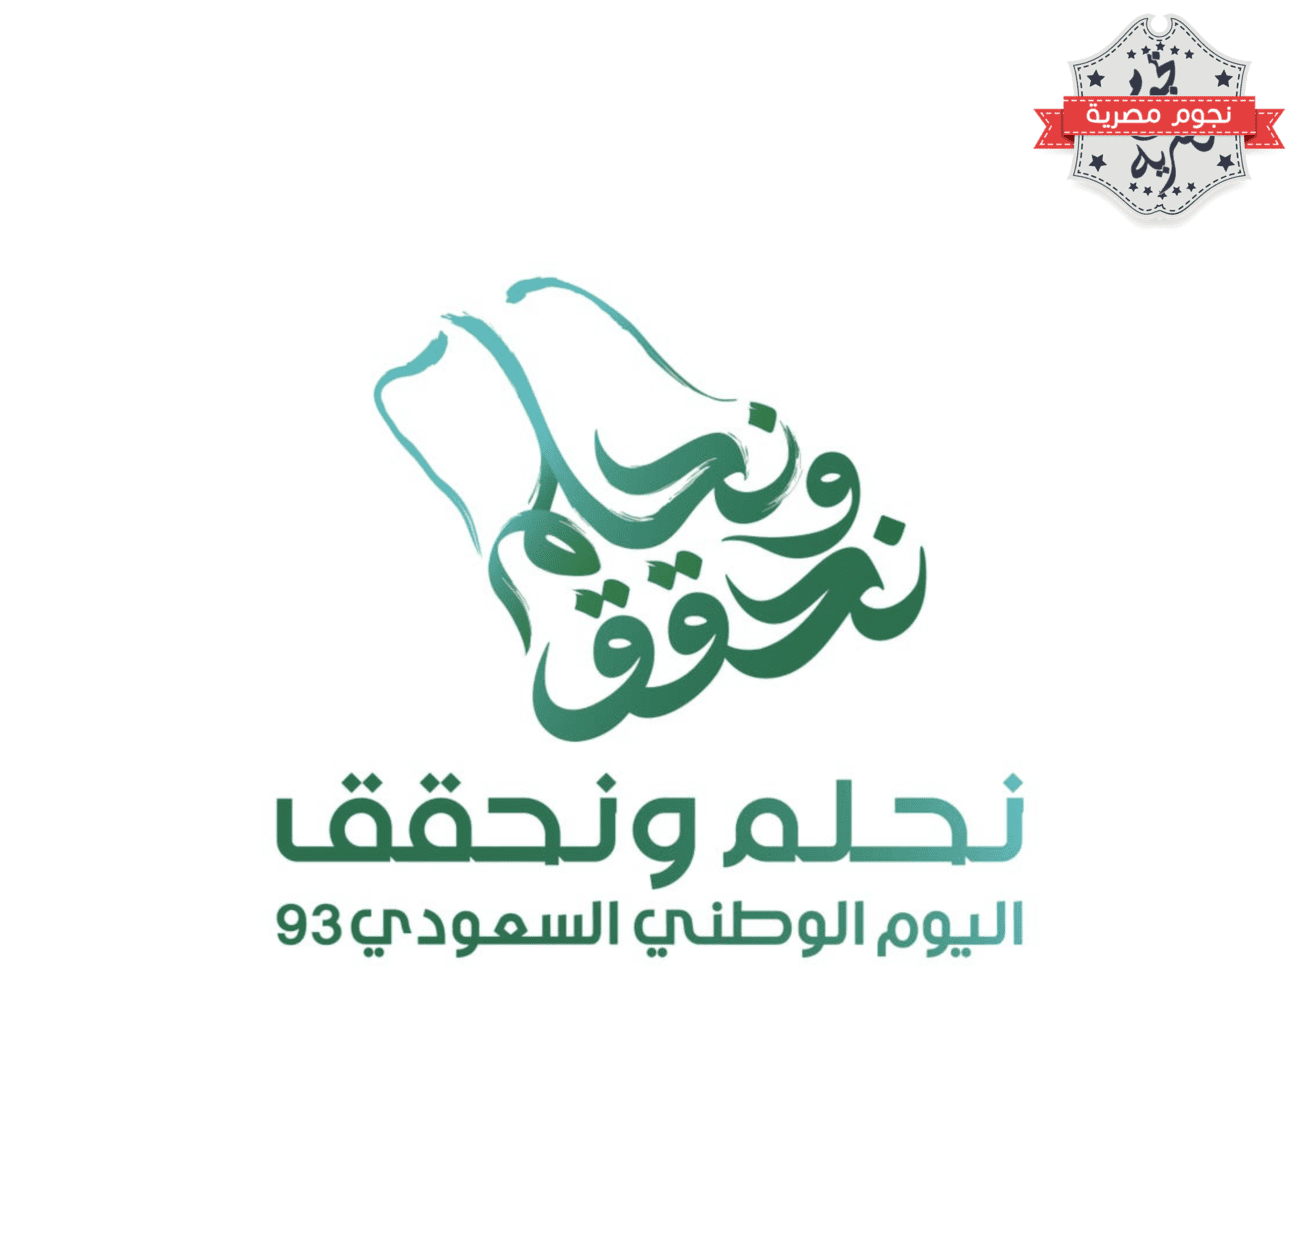 "نحلم ونحقق".. الهوية الجديدة لليوم الوطني السعودي الـ93